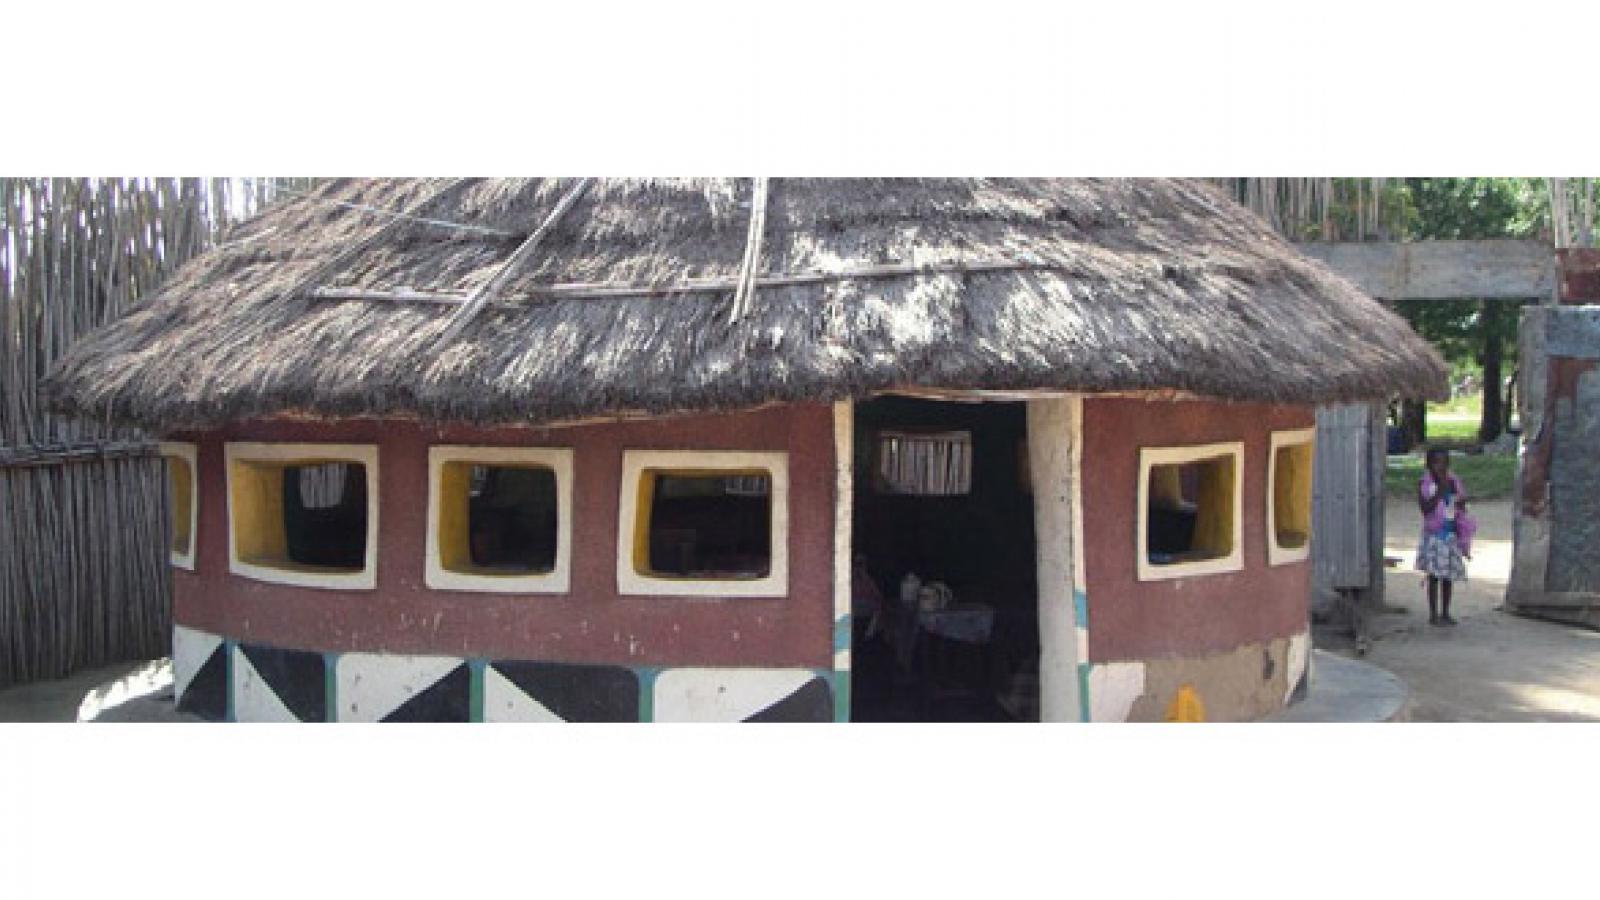 A decorative hut in a small village.